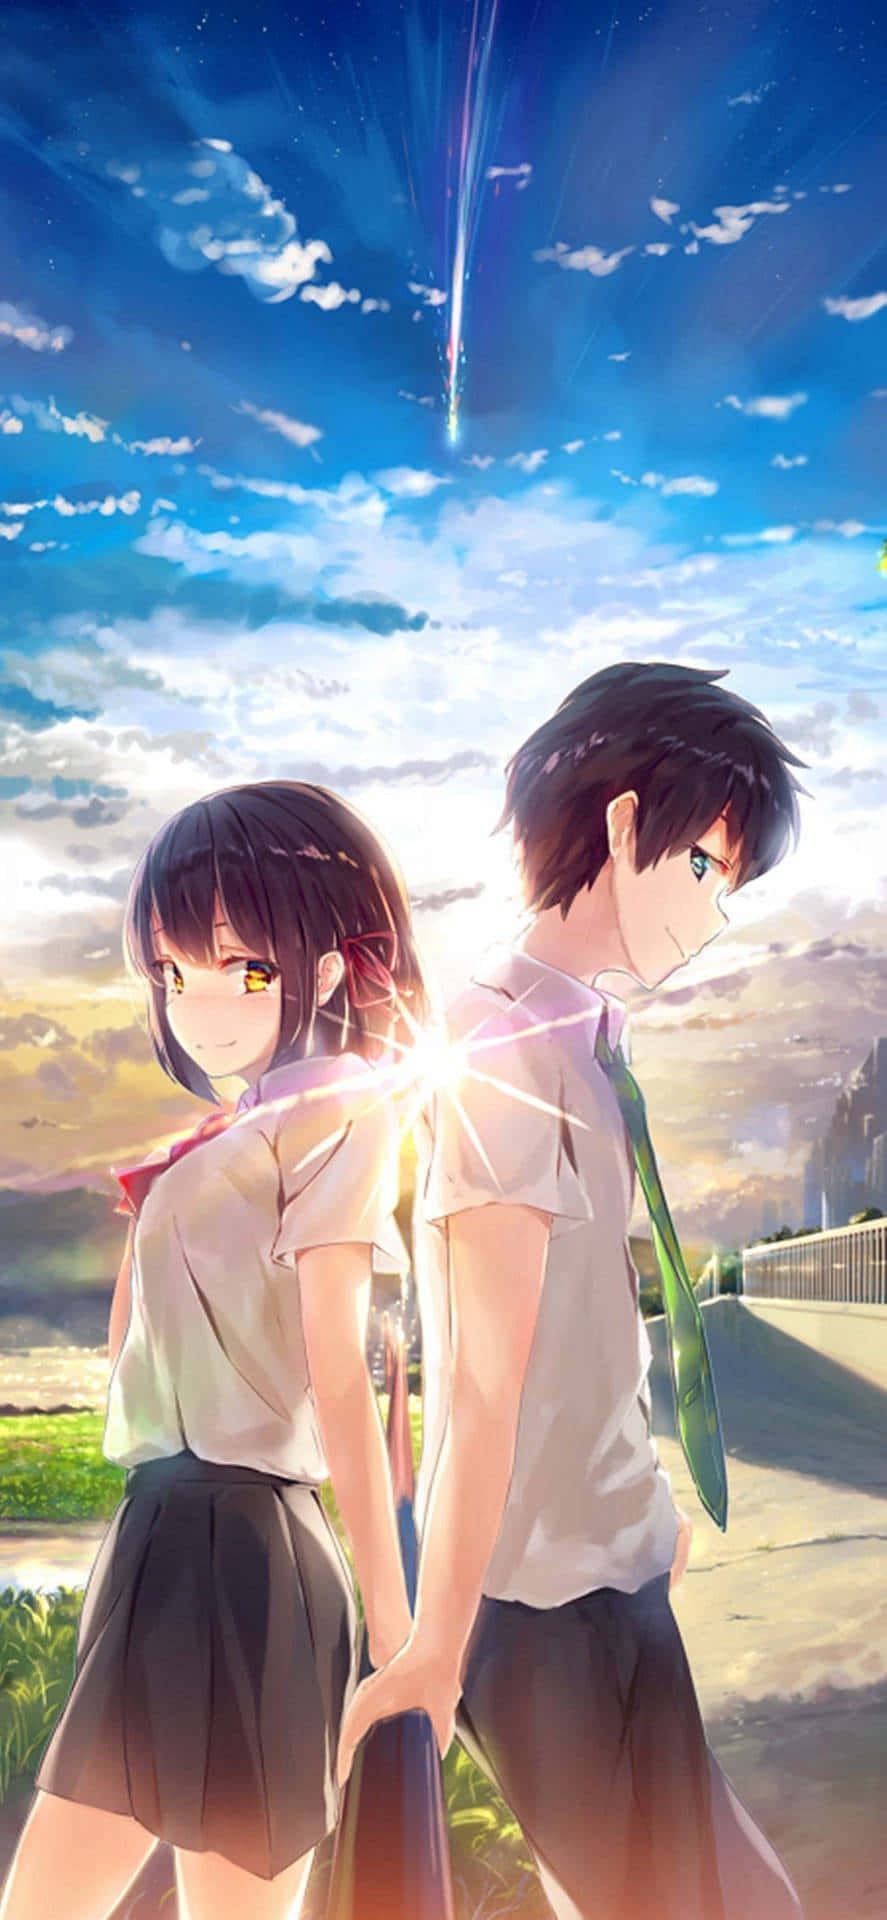 Den smukke og romantiske omfavnelse af unge kærester i anime-verdenen. Wallpaper